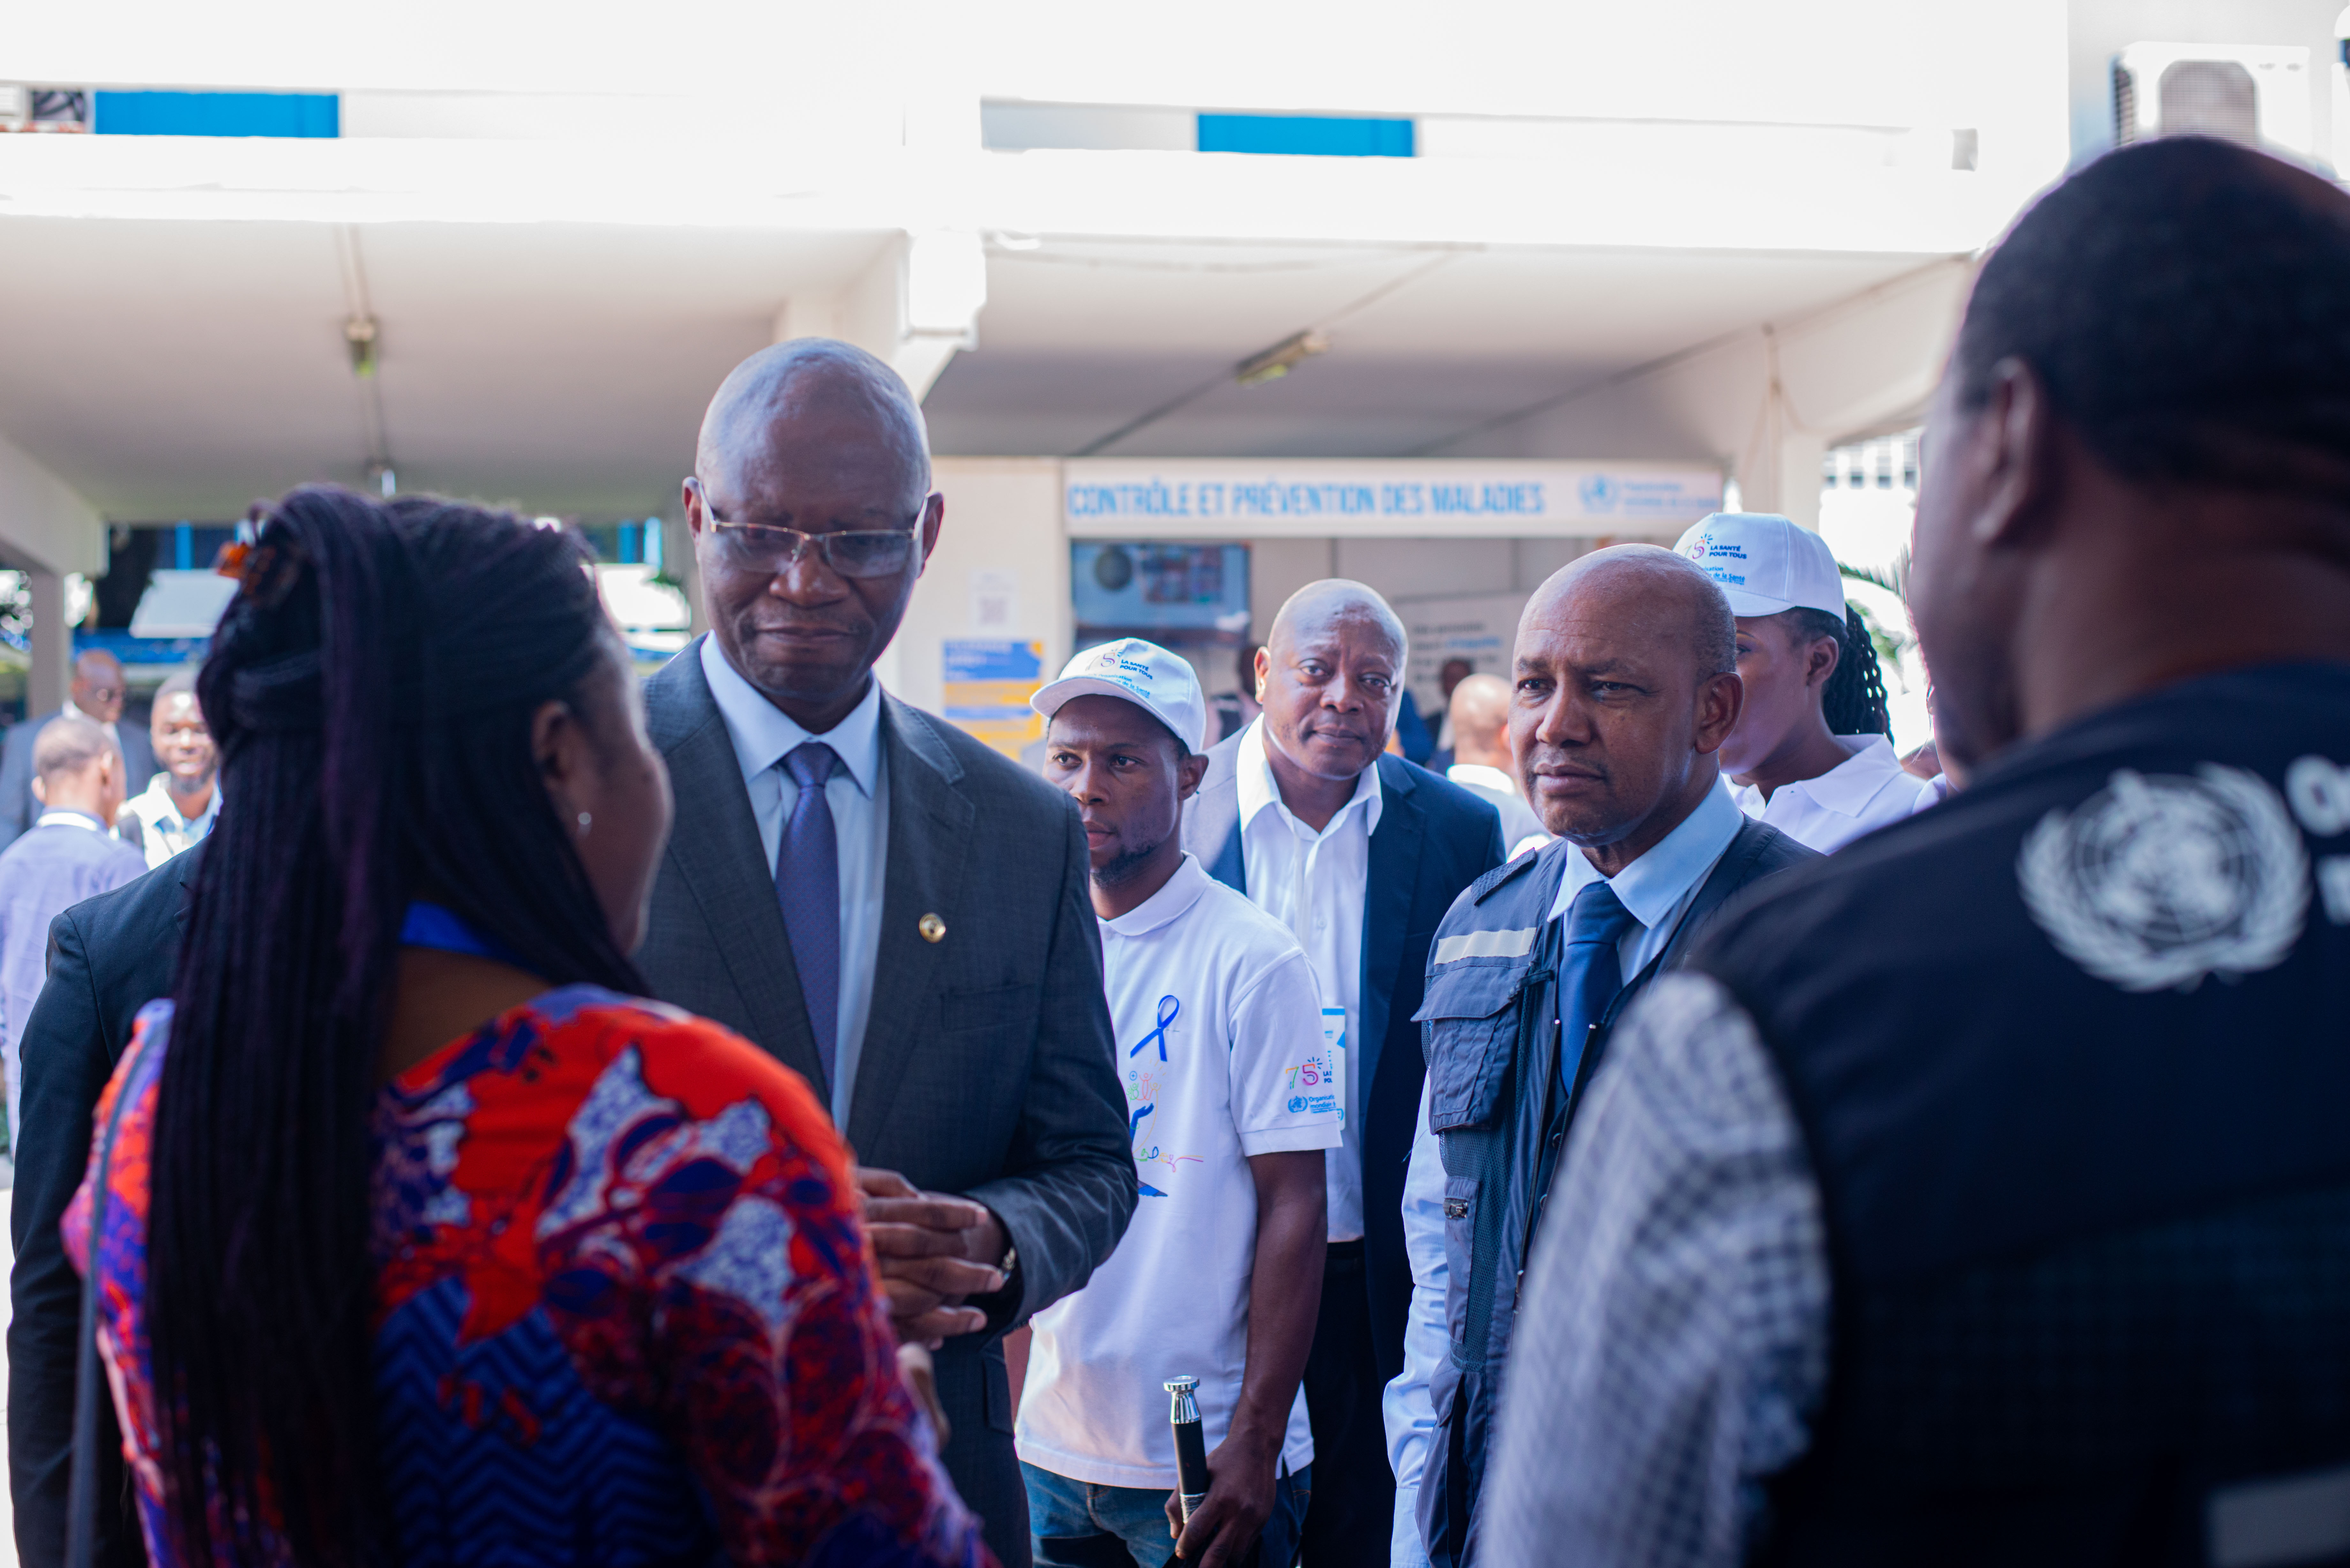 Le ministre de la Santé et le représentant de l'OMS écoutent les explications lors de la visite au stand du Renforcement du Système de Santé_HSS de l'OMS RDC